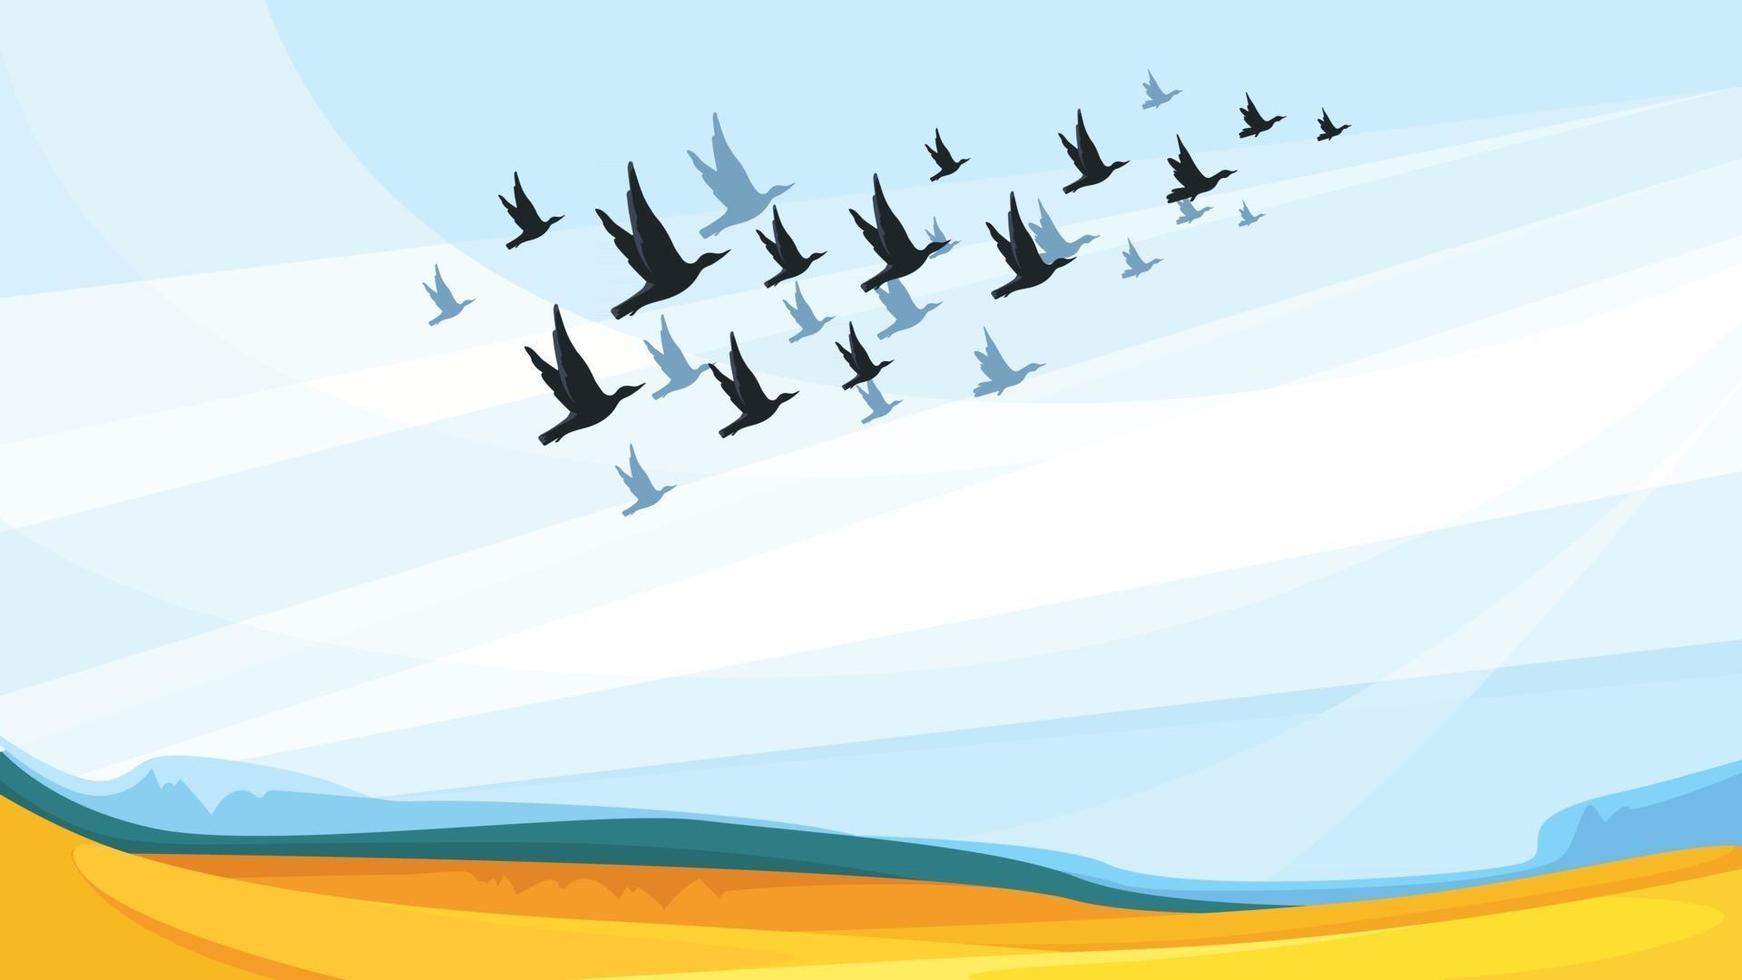 aves migratórias no céu azul vetor